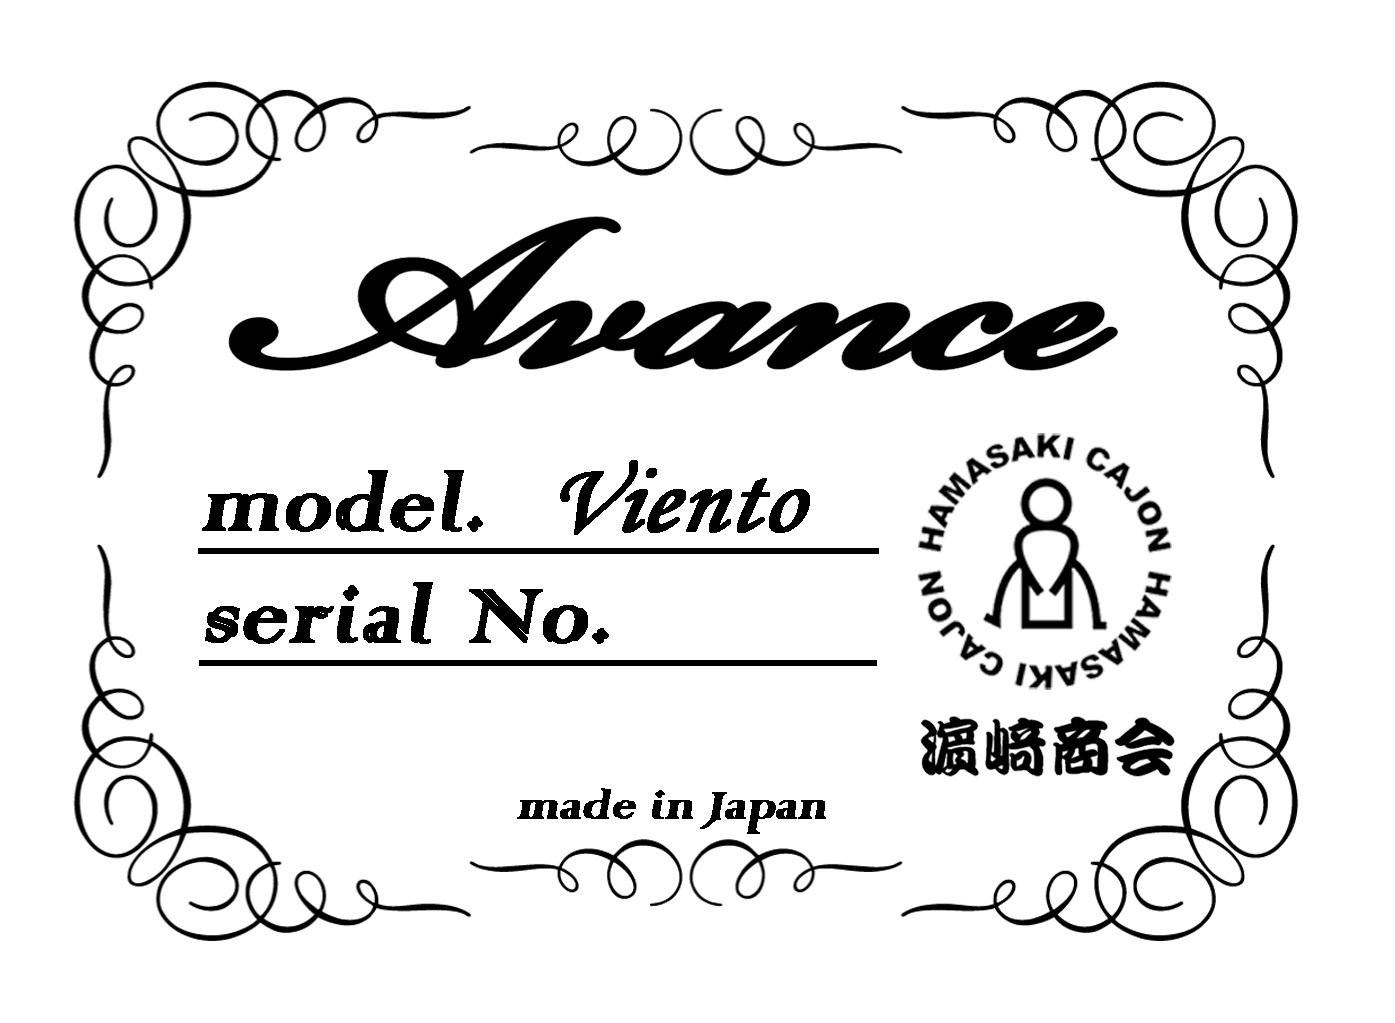 *島村楽器限定モデル、令和元年初日発売！！ 大阪府にある日本有数のカホン工房「濱崎商会」さんとのコラボレーションモデル、「Avance Viento（アヴァンセ ヴィエント）」が2019年5月1日（令和元年初日）に発売となりました！ 『良質なカホンをリーズナブルな価格で』をコンセプトに、試行錯誤を経 […]